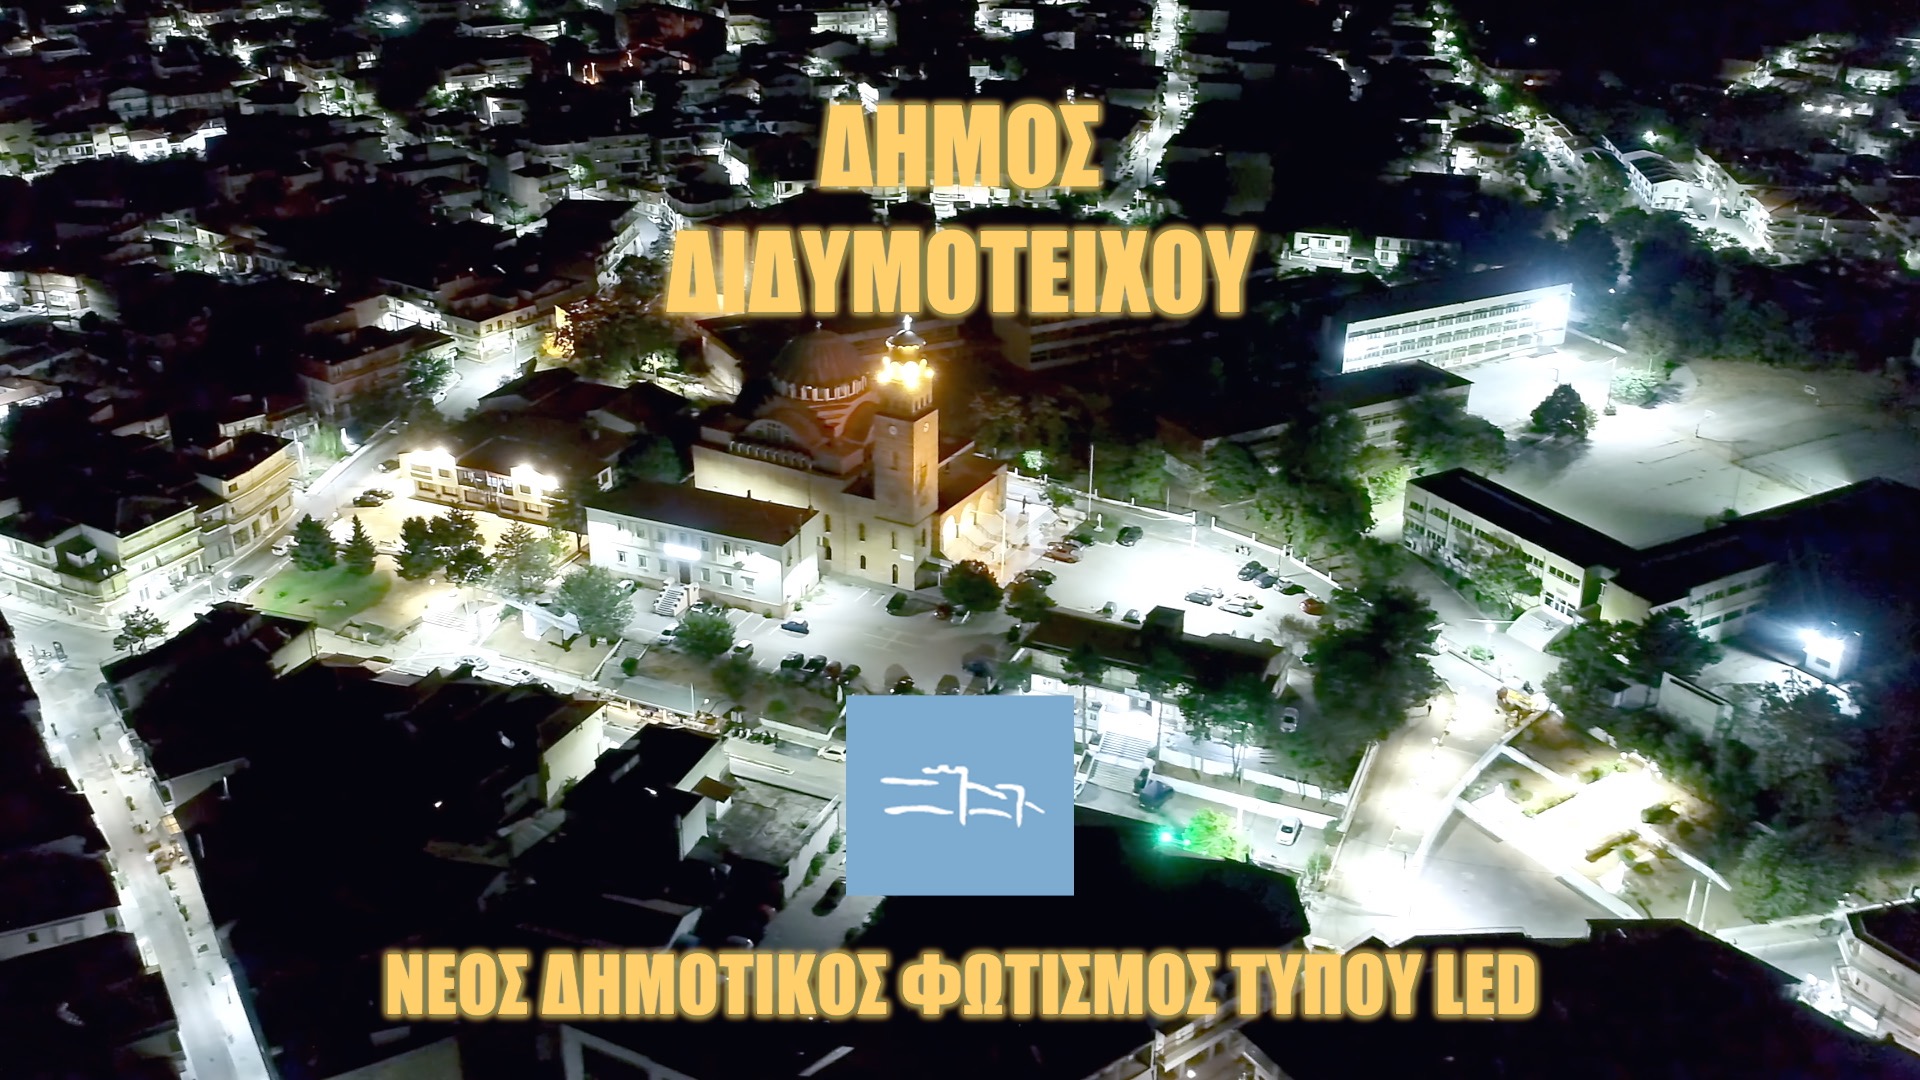 Δήμος Διδυμοτείχου - Νέος δημοτικός φωτισμός τύπου LED